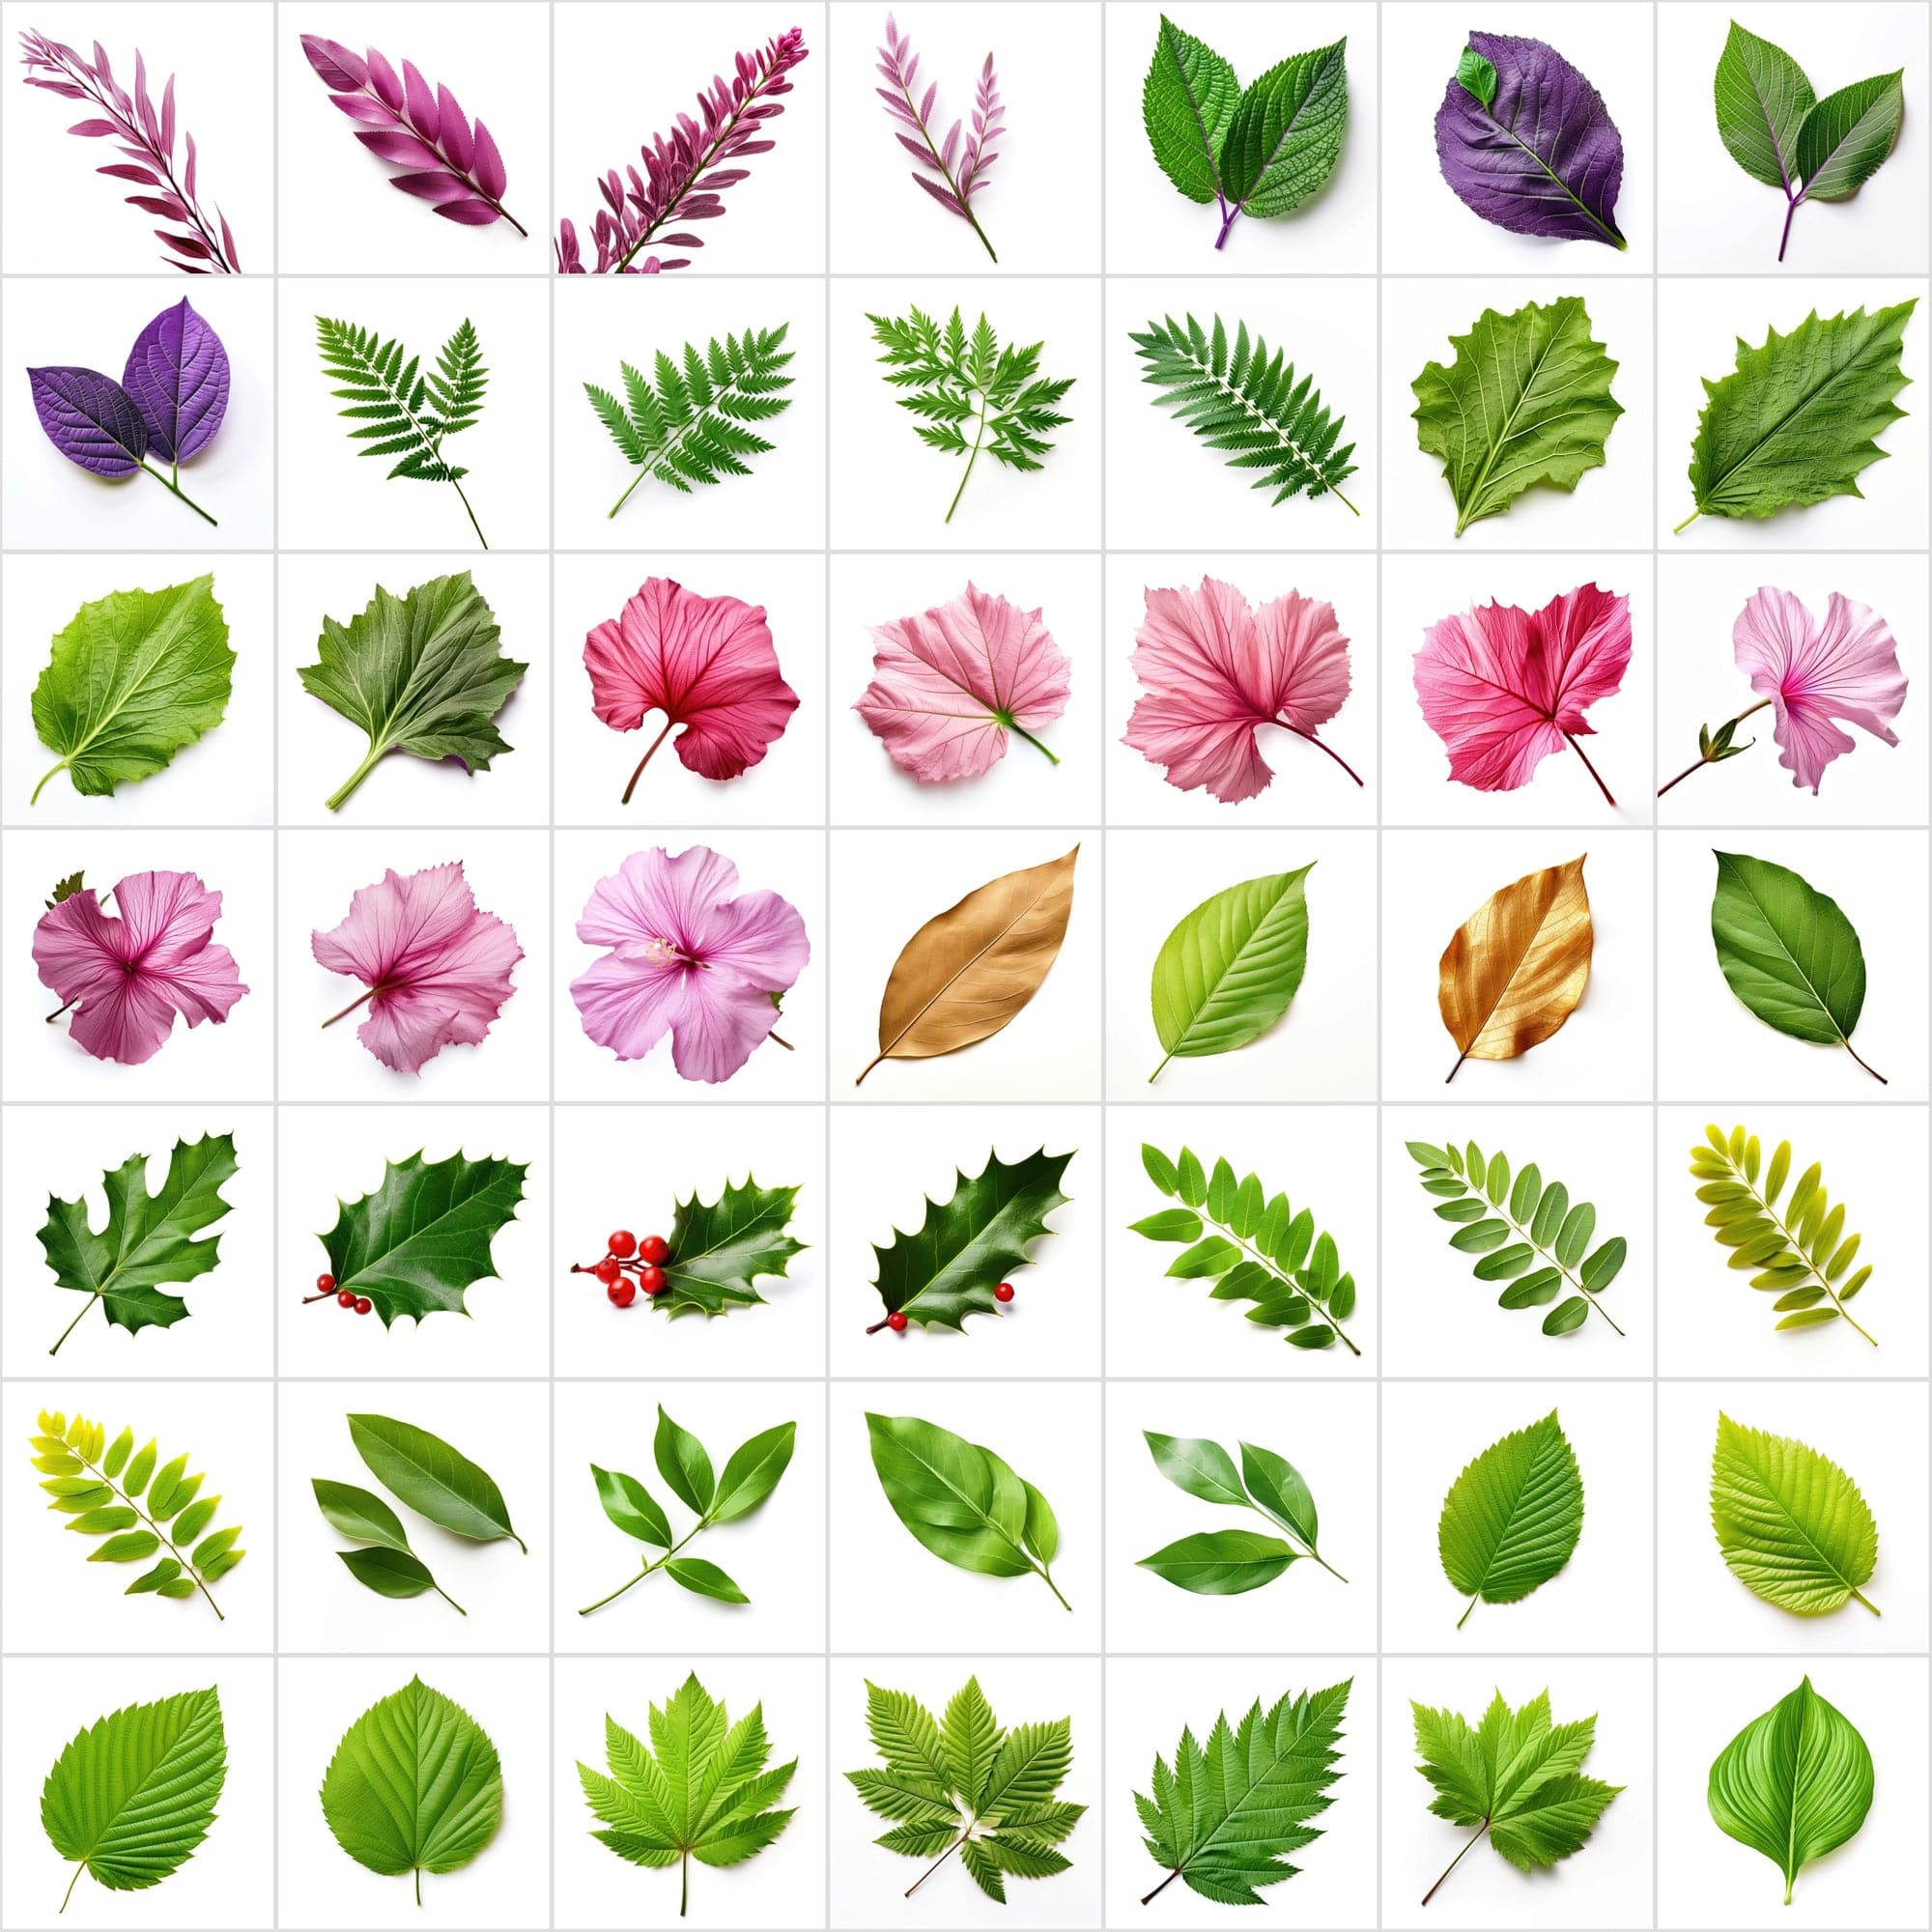 790 Unique Global Leaf PNG Images - High-Resolution, Transparent & White Backgrounds Digital Download Sumobundle